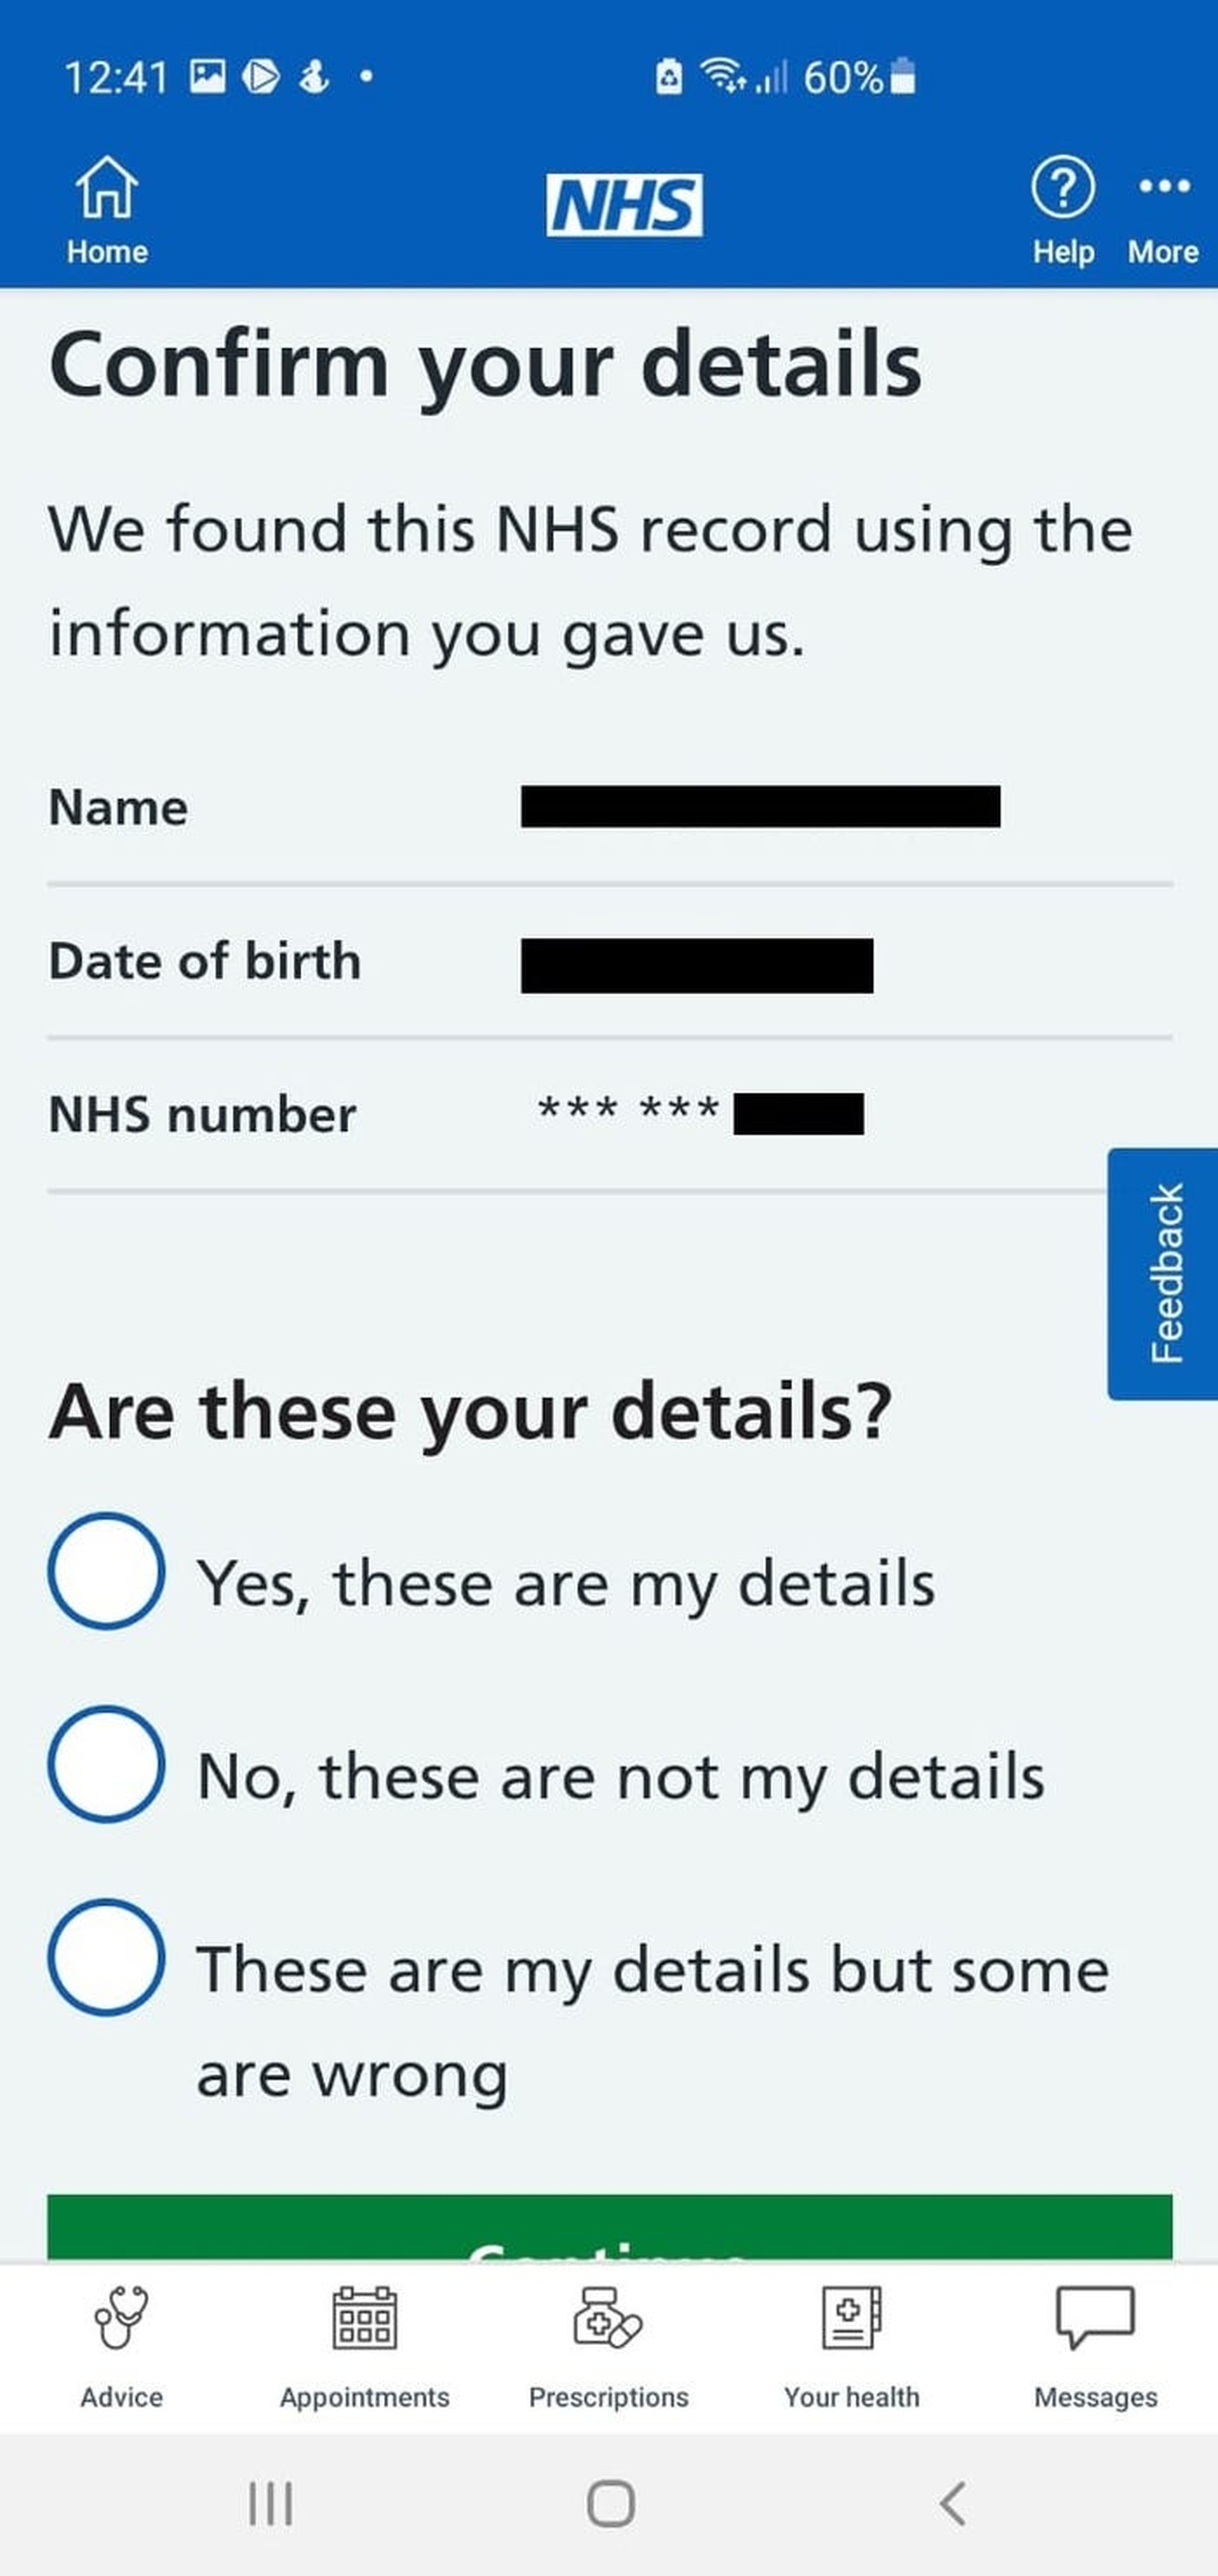 La aplicación pide al usuario confirmar su identidad.